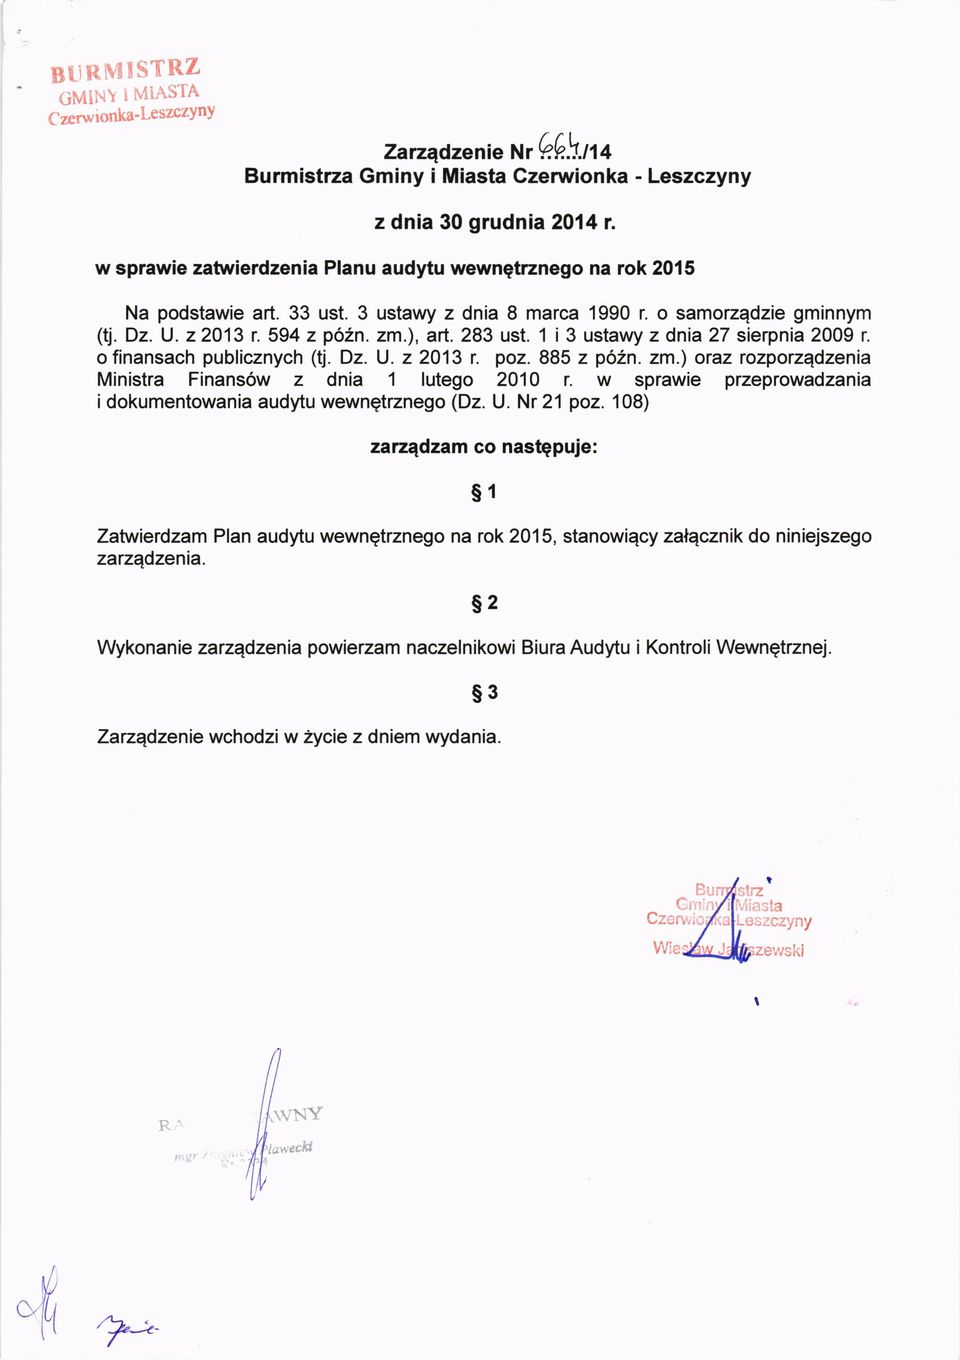 885 z po2n. zm.) oraz rozporzqdzenia Ministra Finans6w z dnia 1 lutego 2010 r. w sprawie przeprowadzania i dokumentowania audytu wewnqtrznego (Dz. U. Nr 21 poz.